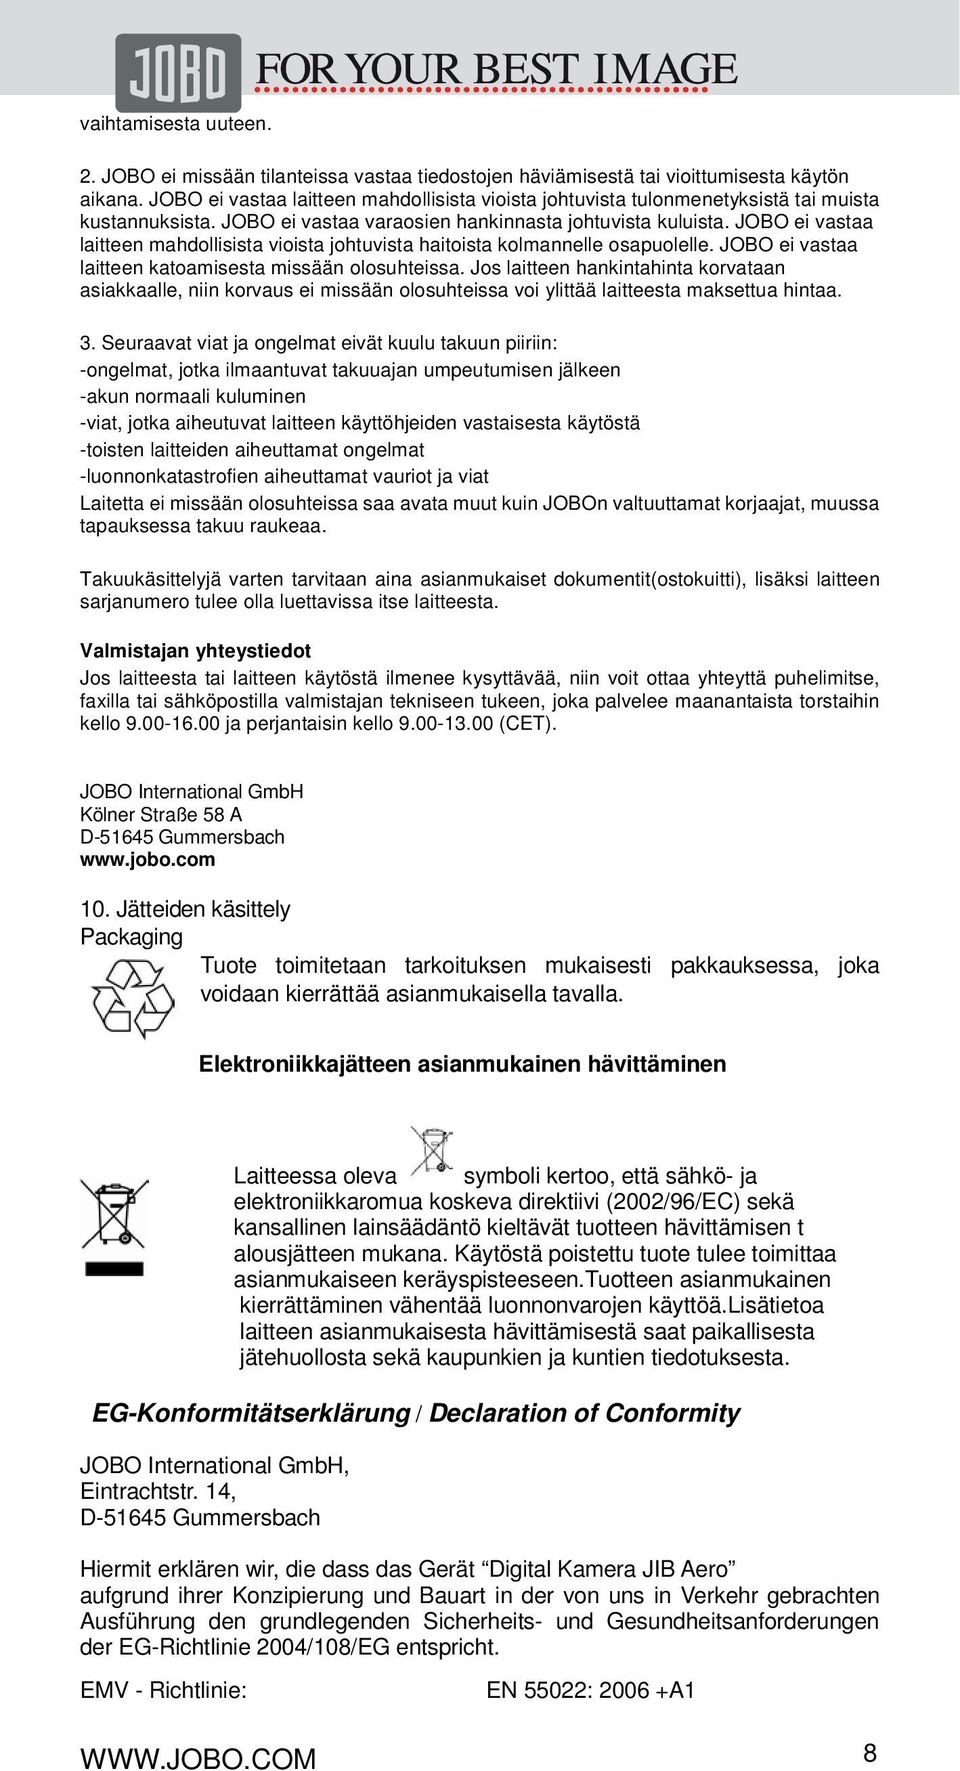 Käyttöohje JIB Aero. 1. Ominaisuudet. 2. Pakkauksen sisältö. 3. Kuvaamiseen  liittyvät toiminnot PDF Ilmainen lataus